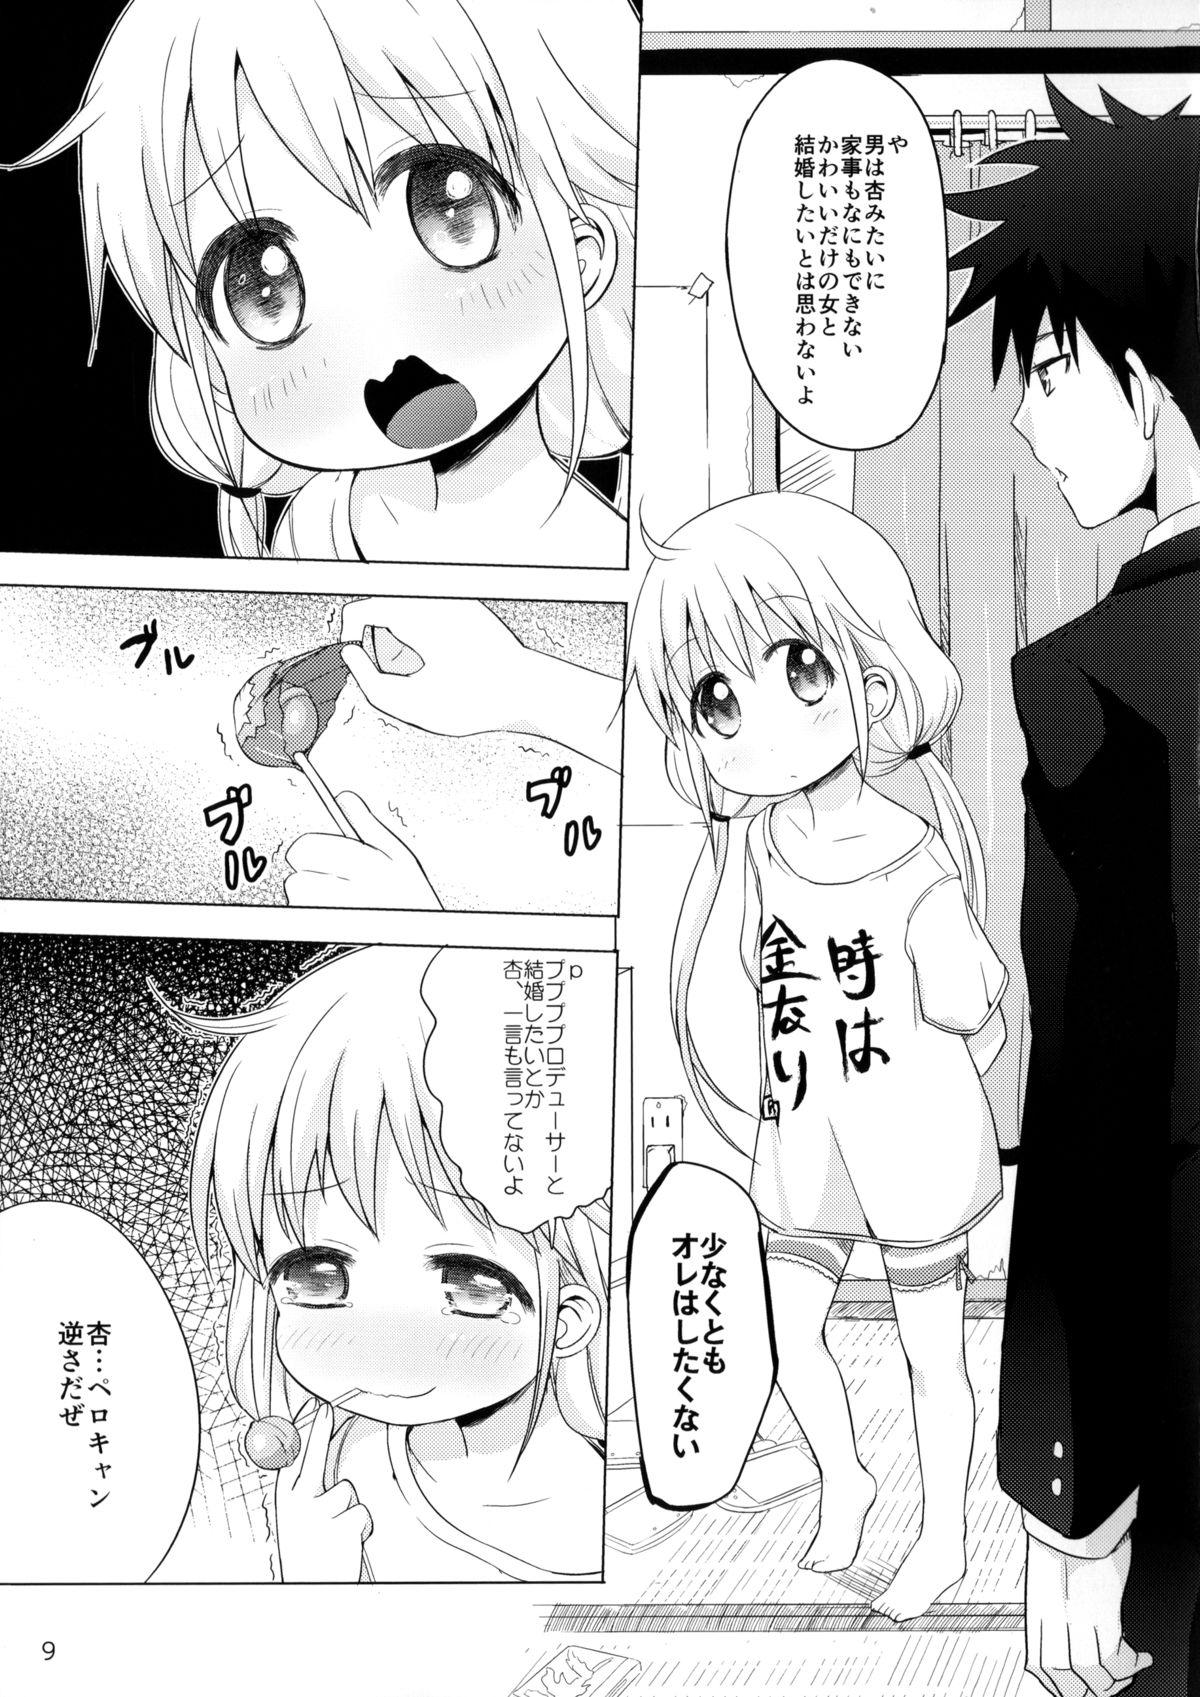 Culote Kono Sex ga Owattara Watashi, Kekkon surunda!!! - The idolmaster Porn - Page 6